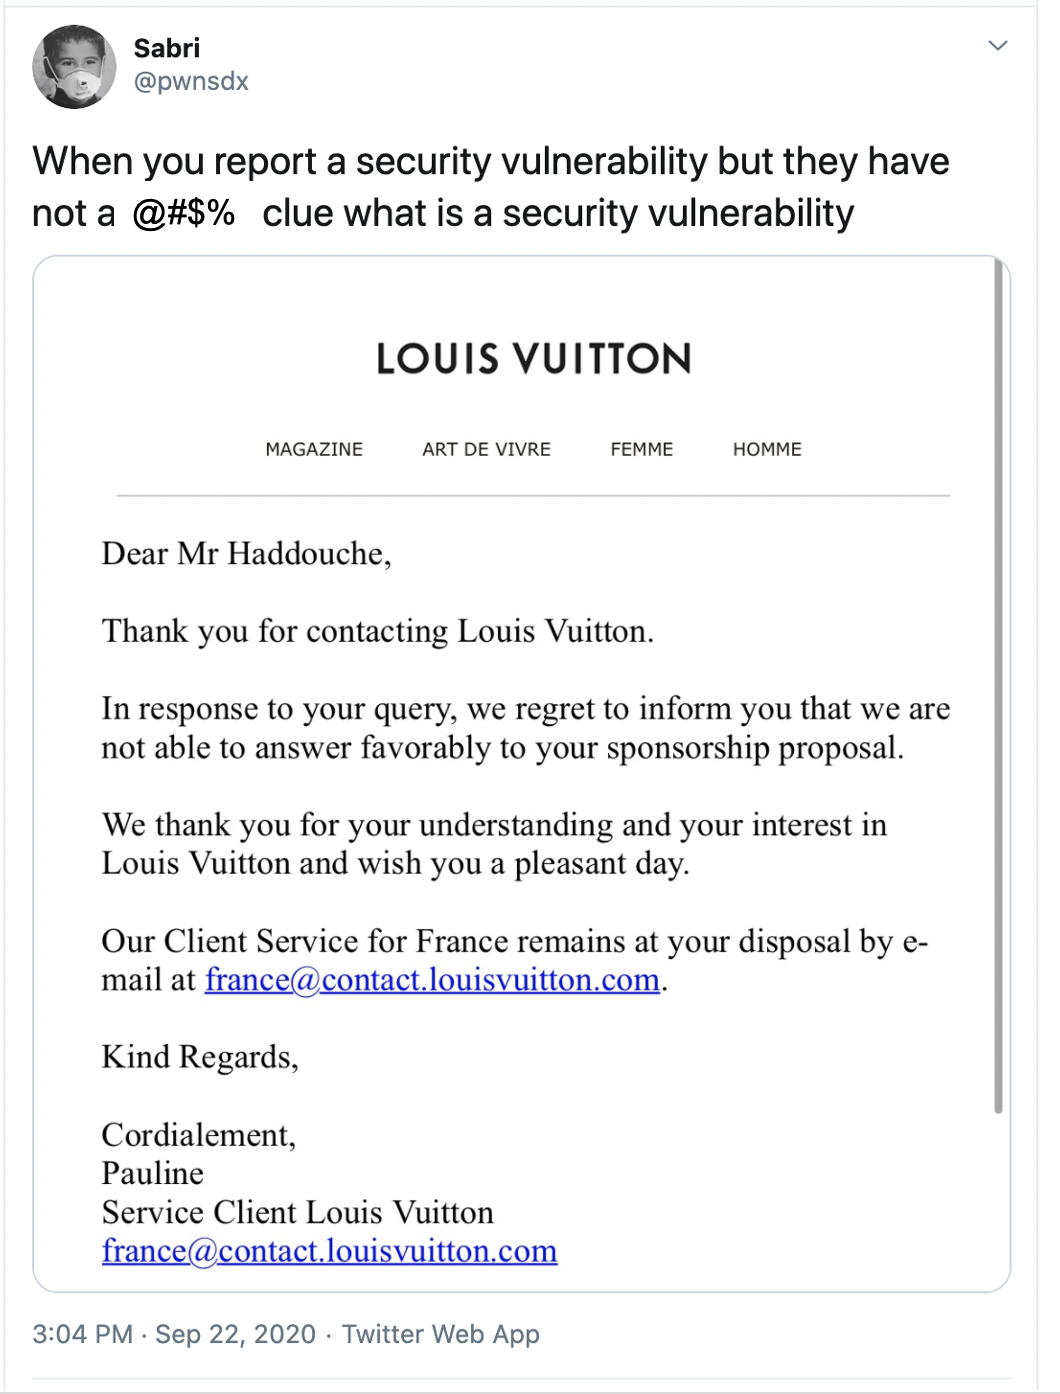 Rapport de vulnérabilité de Sabri Louis Vuitton